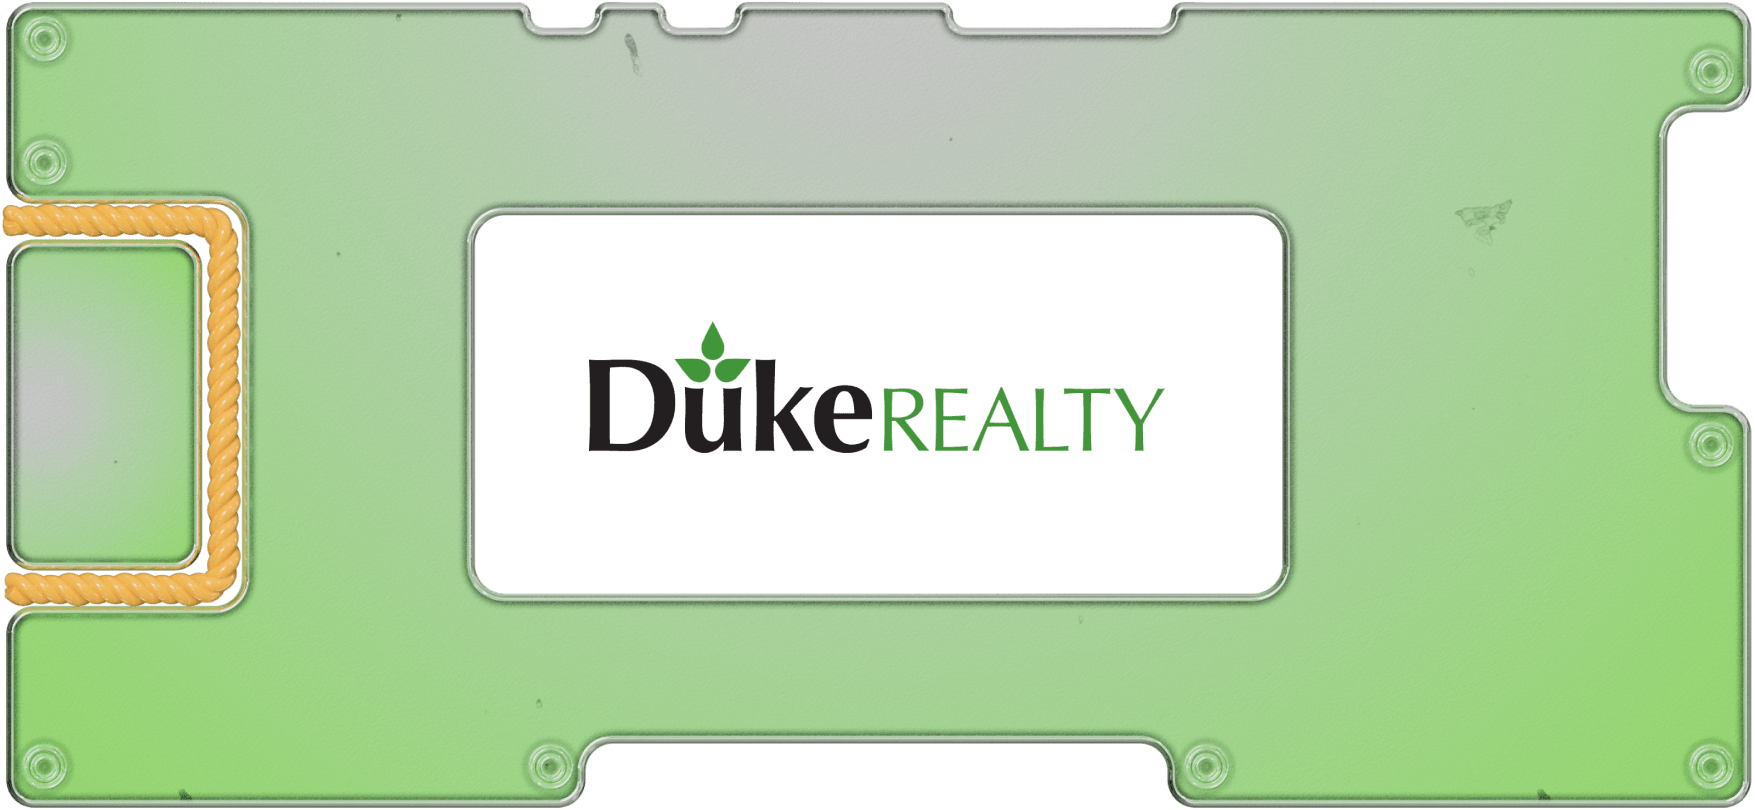 Герцоги недвижимости: инвестируем в складской REIT Duke Realty